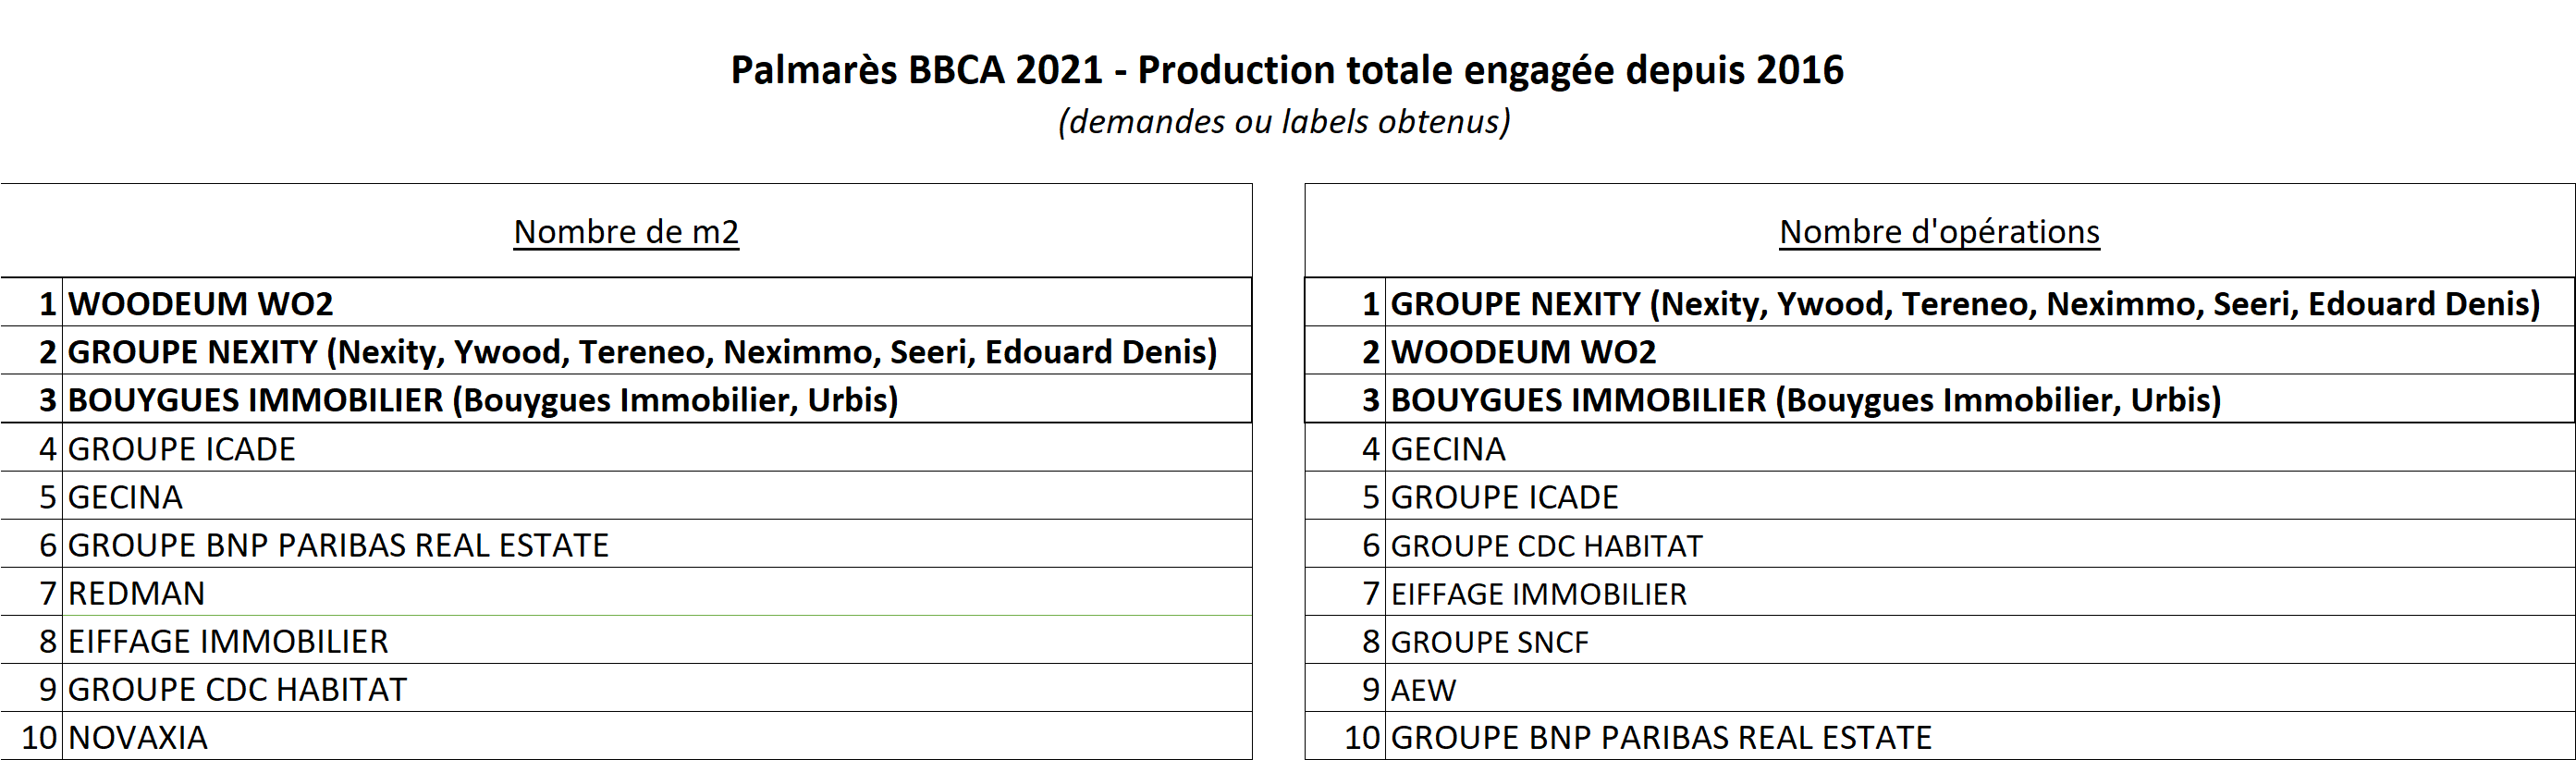 Palmarès BBCA 2021 - Classements Production totale engagée depuis 2016 - Source : Association BBCA